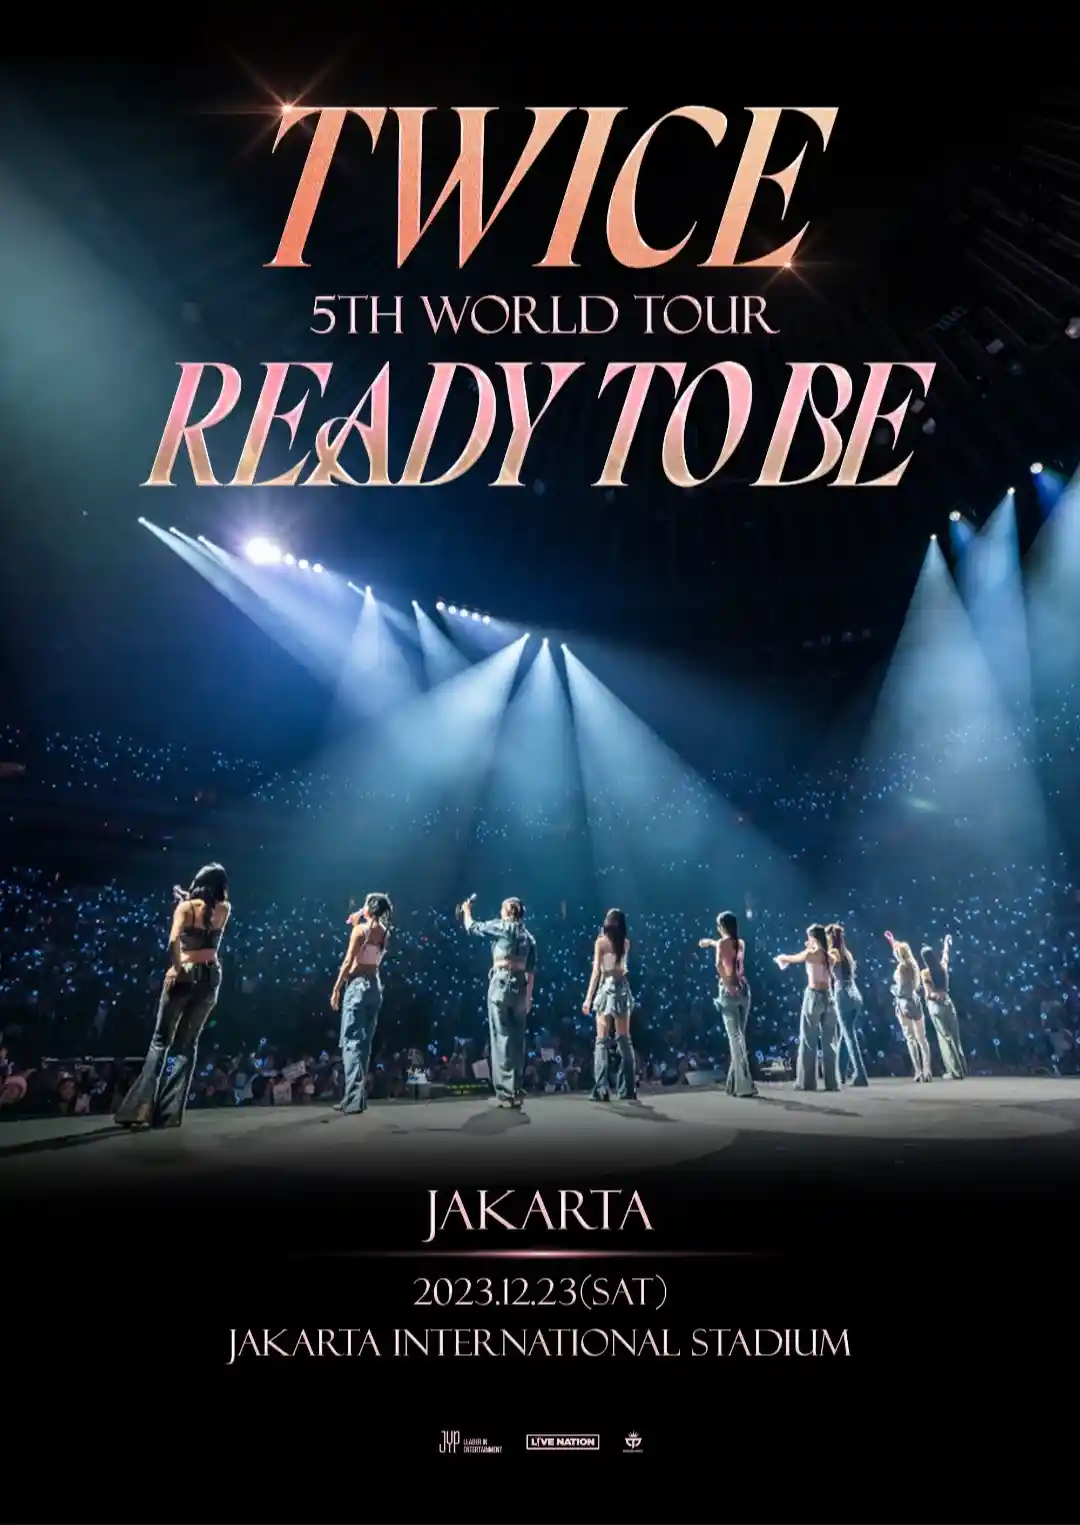 Harga tiket konser TWICE di Jakarta 2023